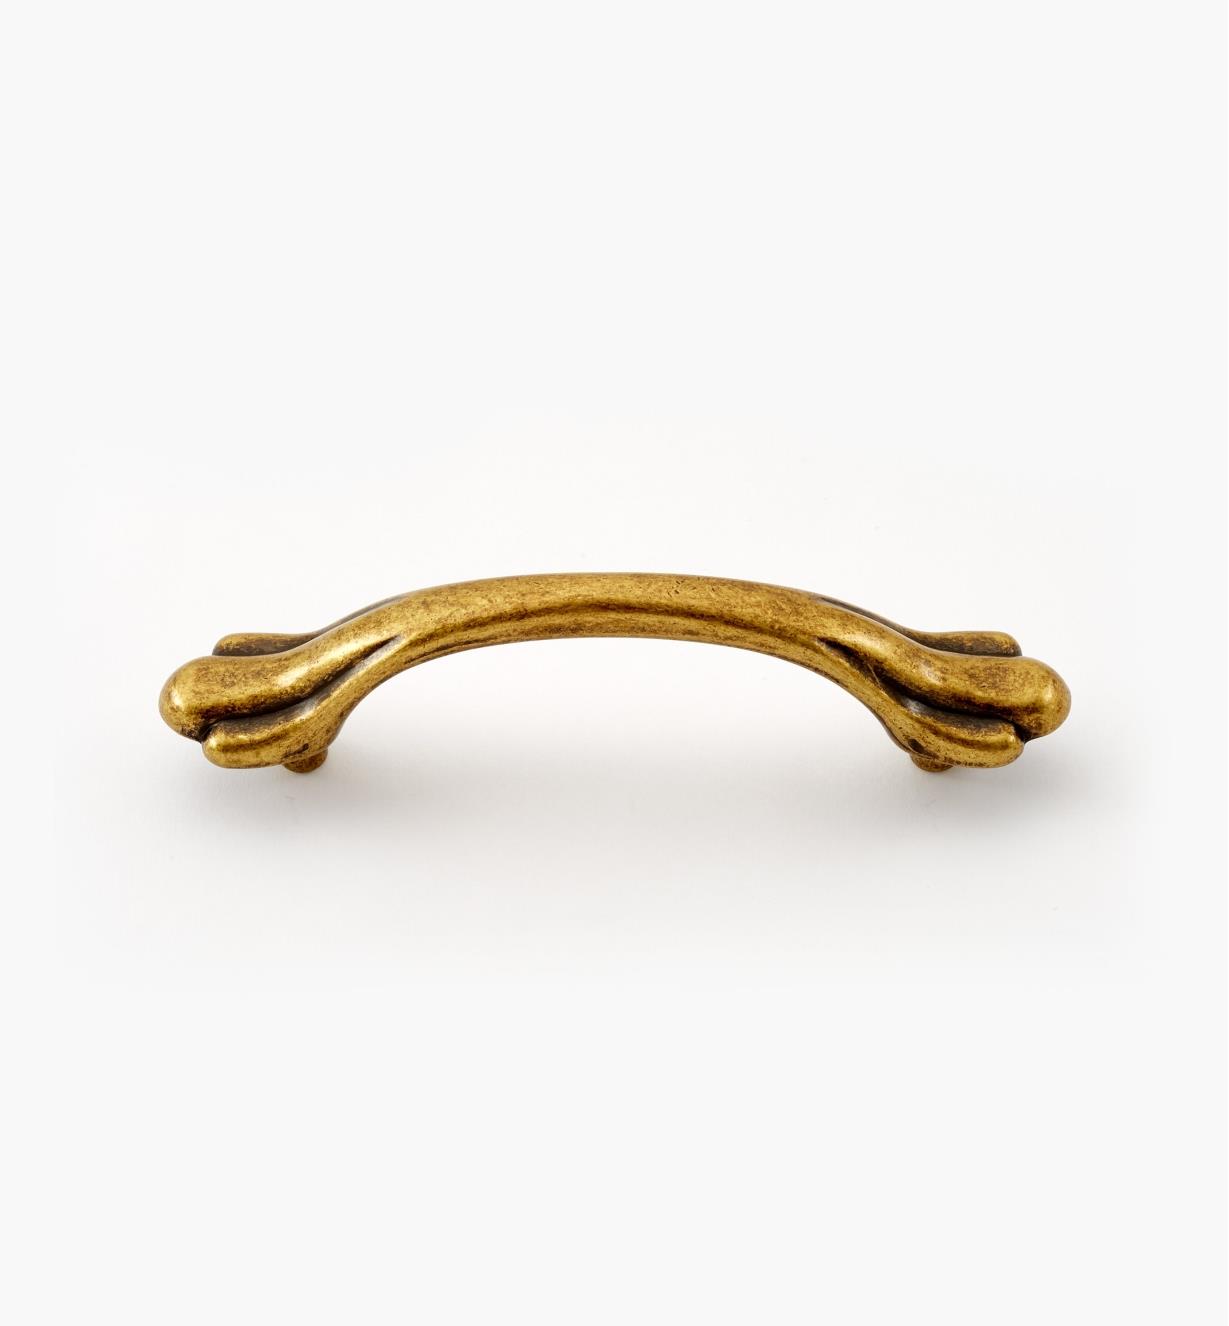 02W2714 - 4 1/4" Antique Brass Handle